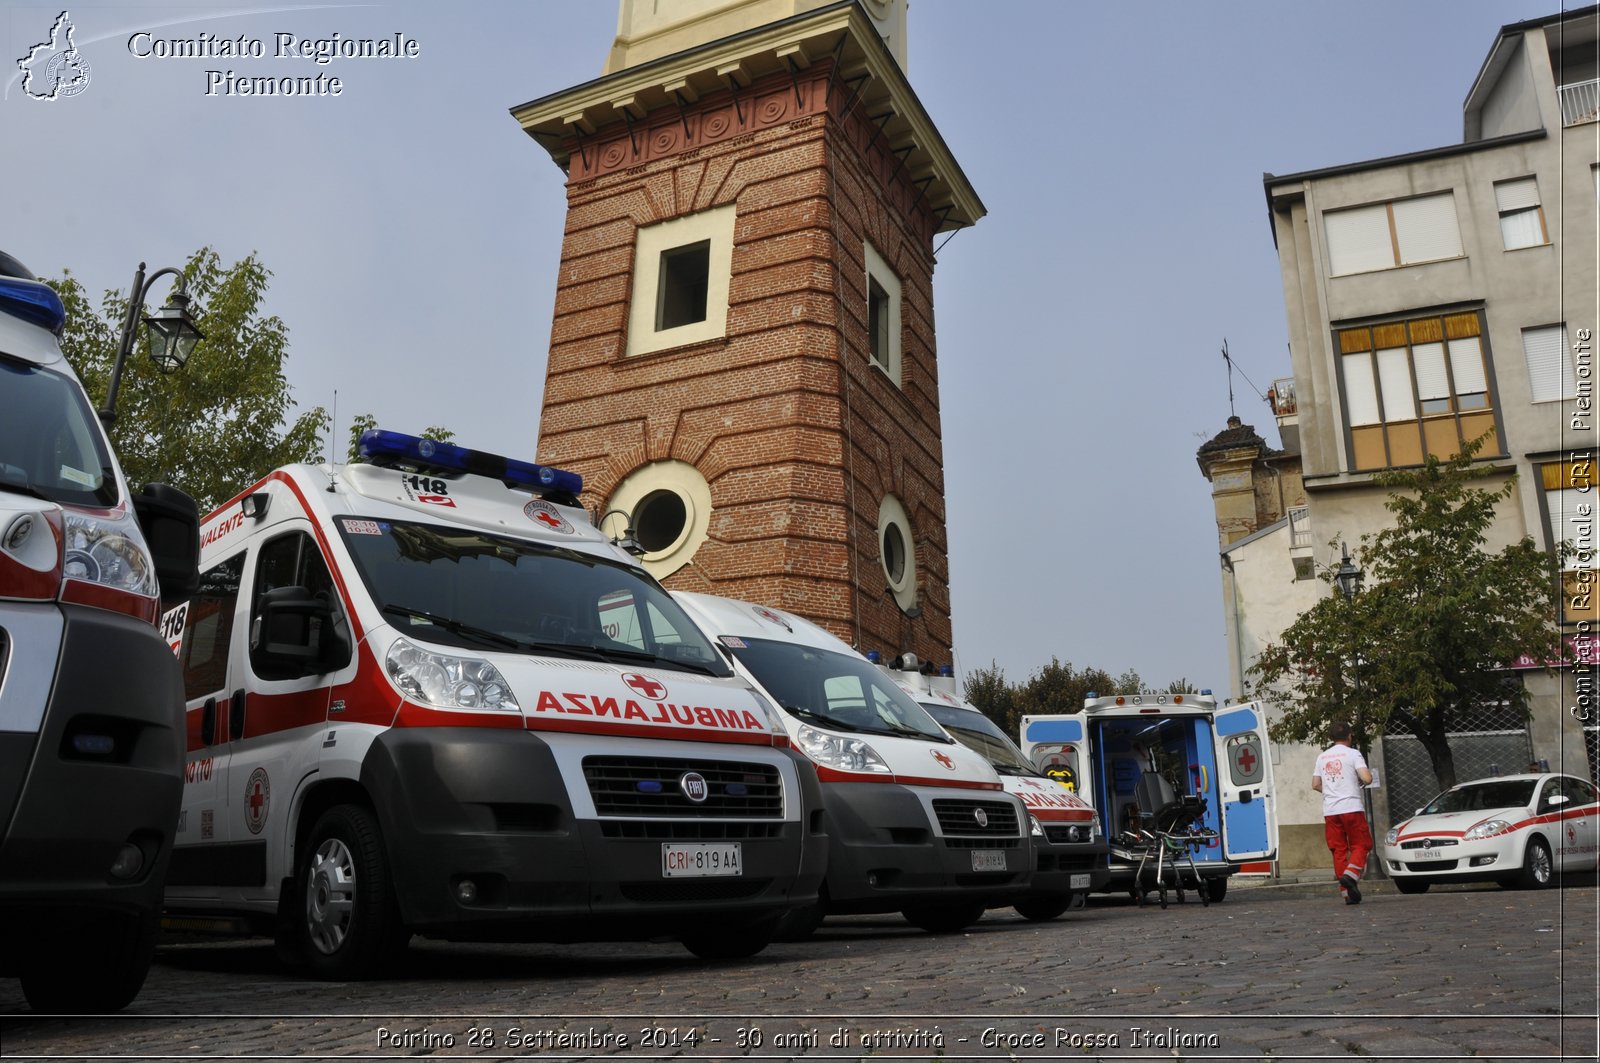 Poirino 28 Settembre 2014 - 30 anni di attivit - Croce Rossa Italiana- Comitato Regionale del Piemonte